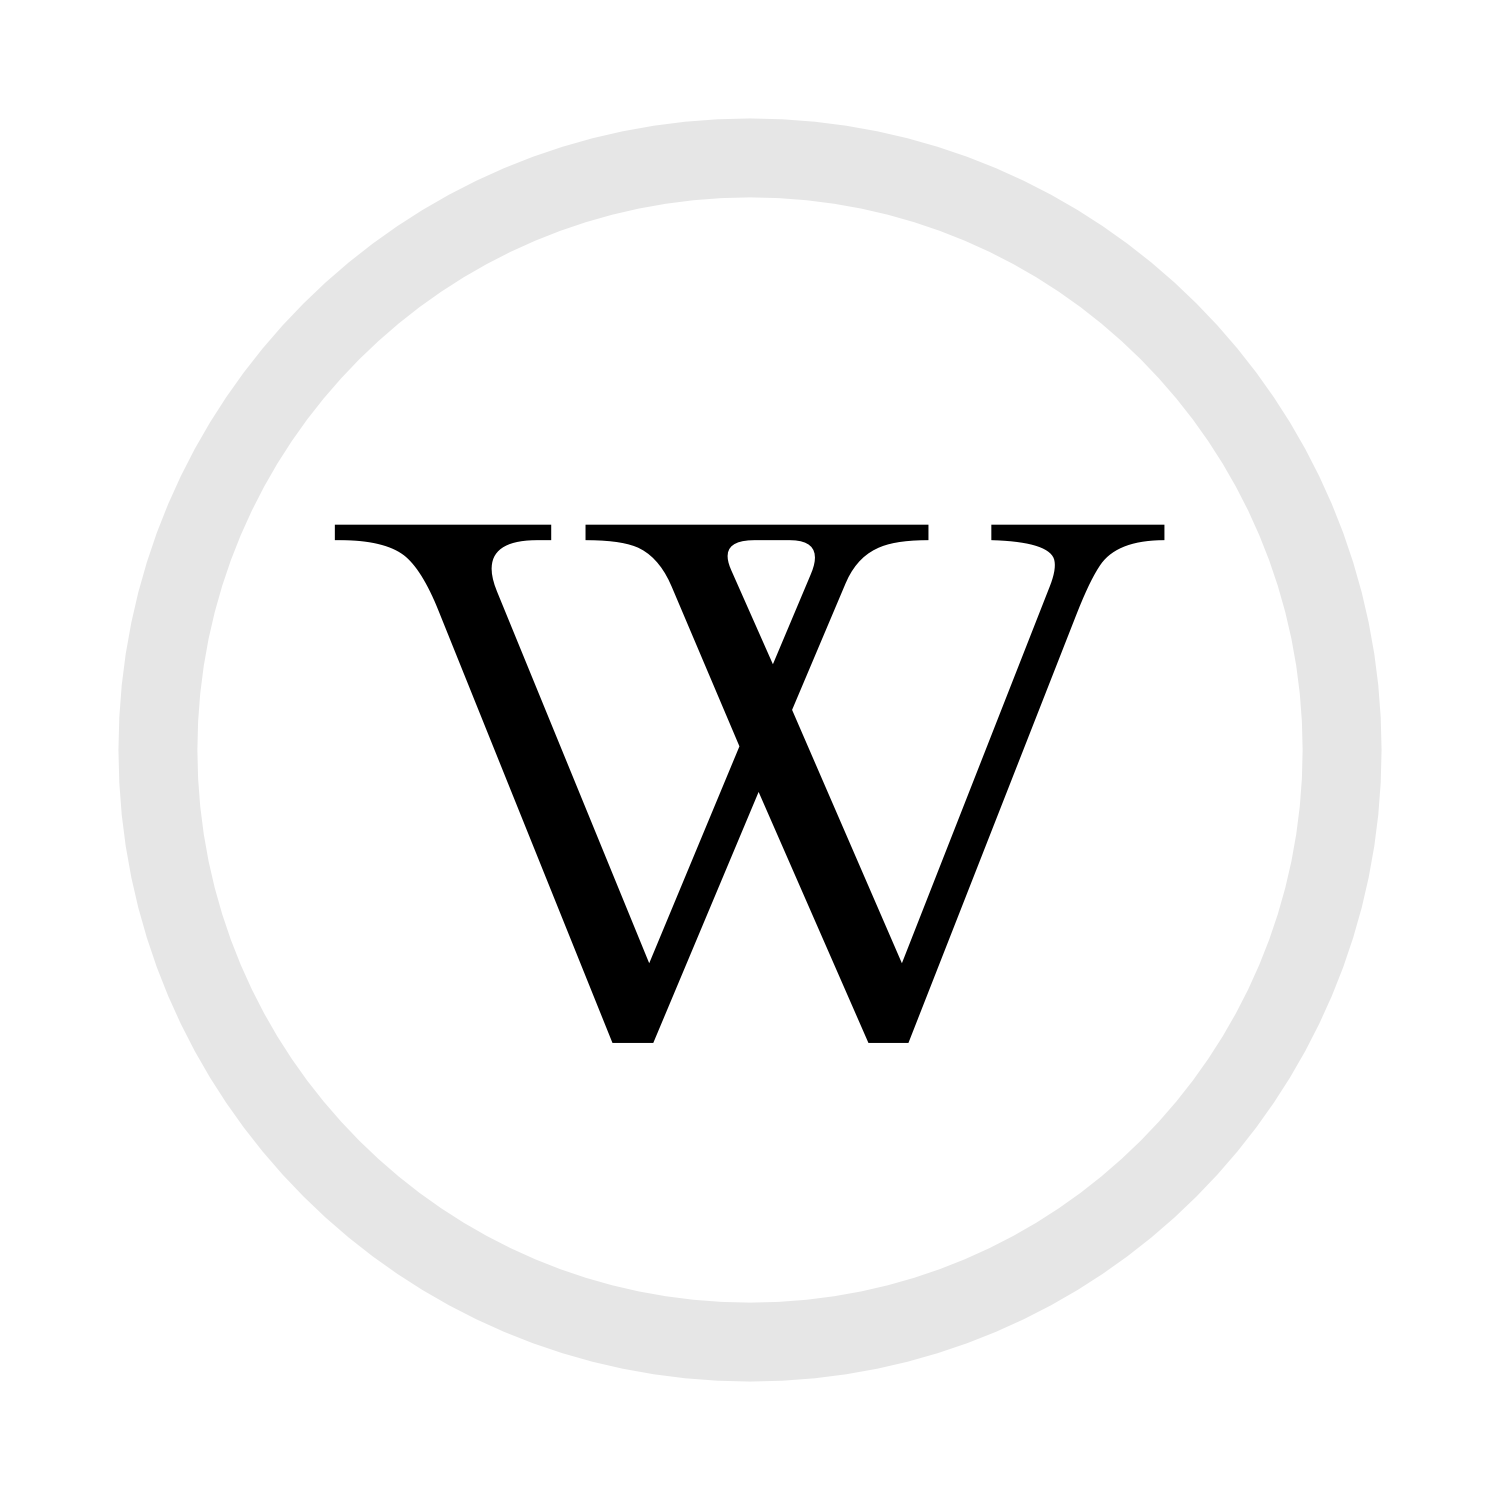 Black W Circle Logo - Restren:W in circle.png